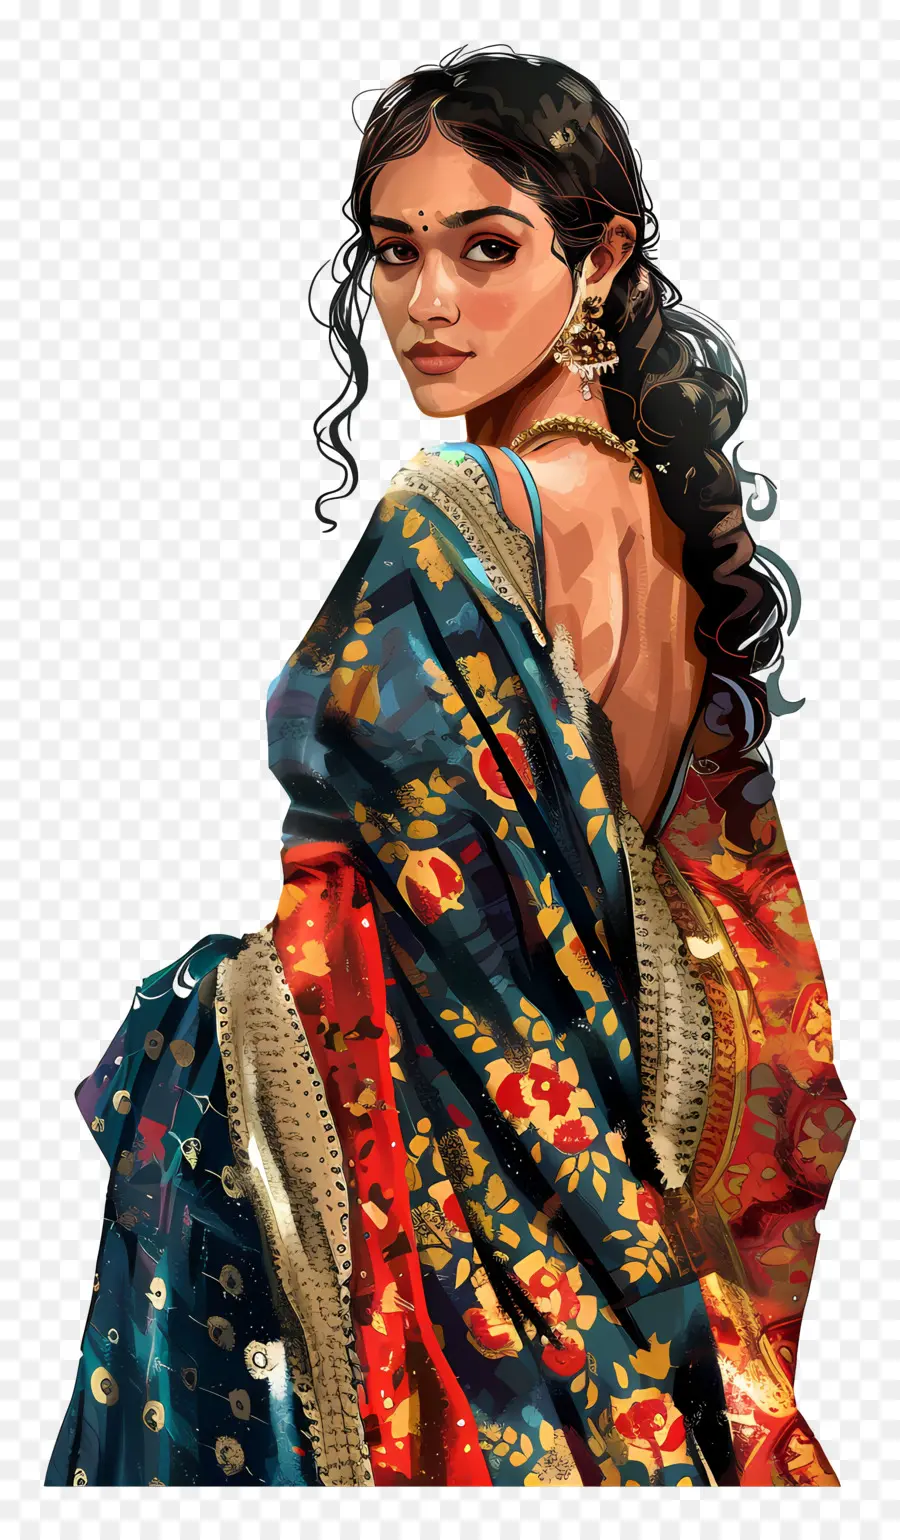 Thiết kế vẽ tranh Sanj Banarai Interichte trong nghệ thuật Ấn Độ tốt WO - Người phụ nữ xinh đẹp trong bức tranh vẽ chân dung Sari Blue Sari